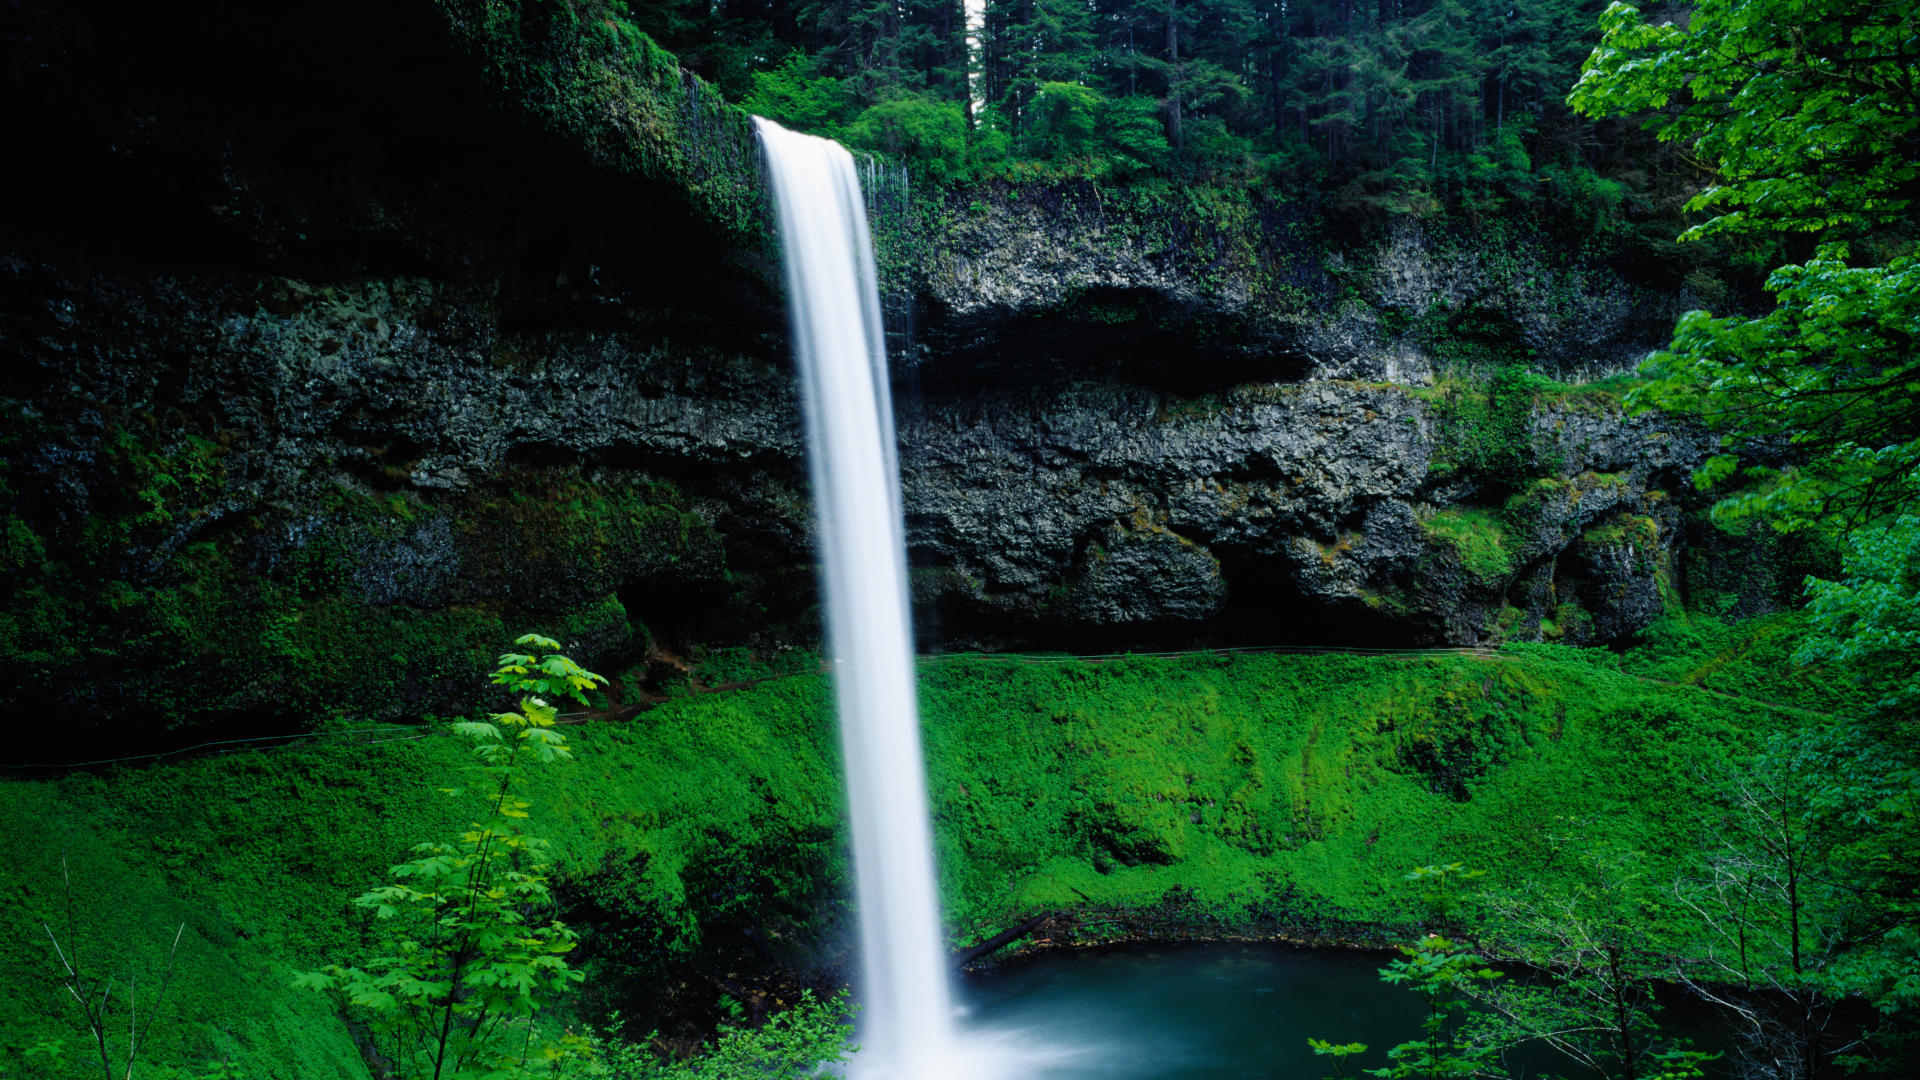 Экран водопад это. Silver Falls State Park Oregon. Красивые водопады. Живая природа водопады. Картинки на заставку компьютера.